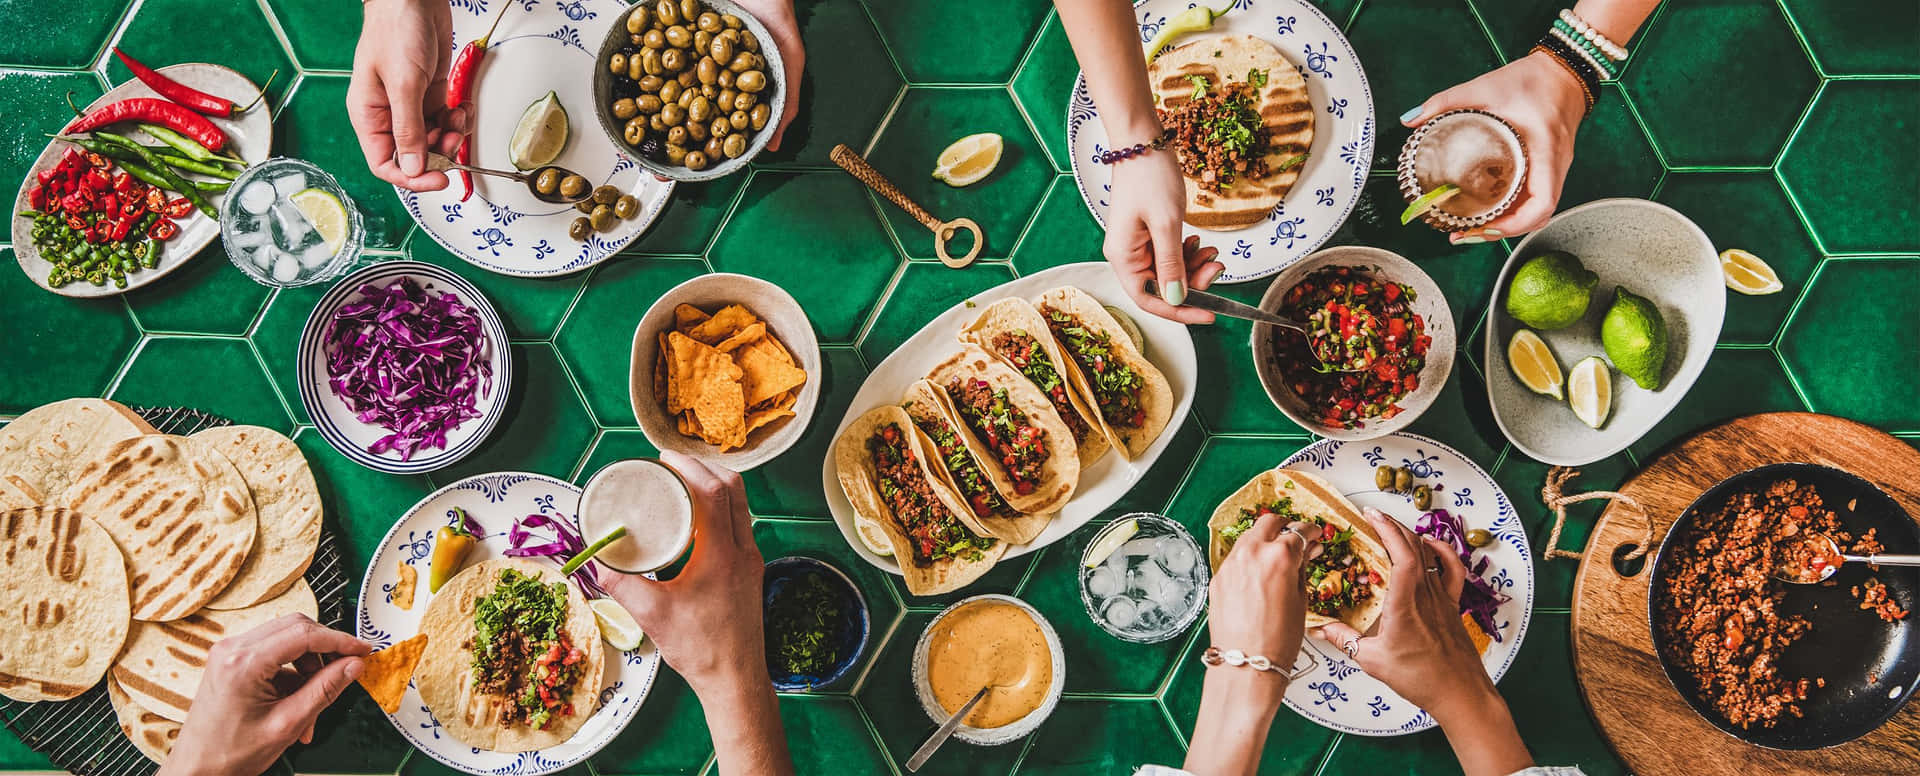 Umgrupo De Pessoas Comendo Comida Em Uma Mesa Com Azulejos Verdes